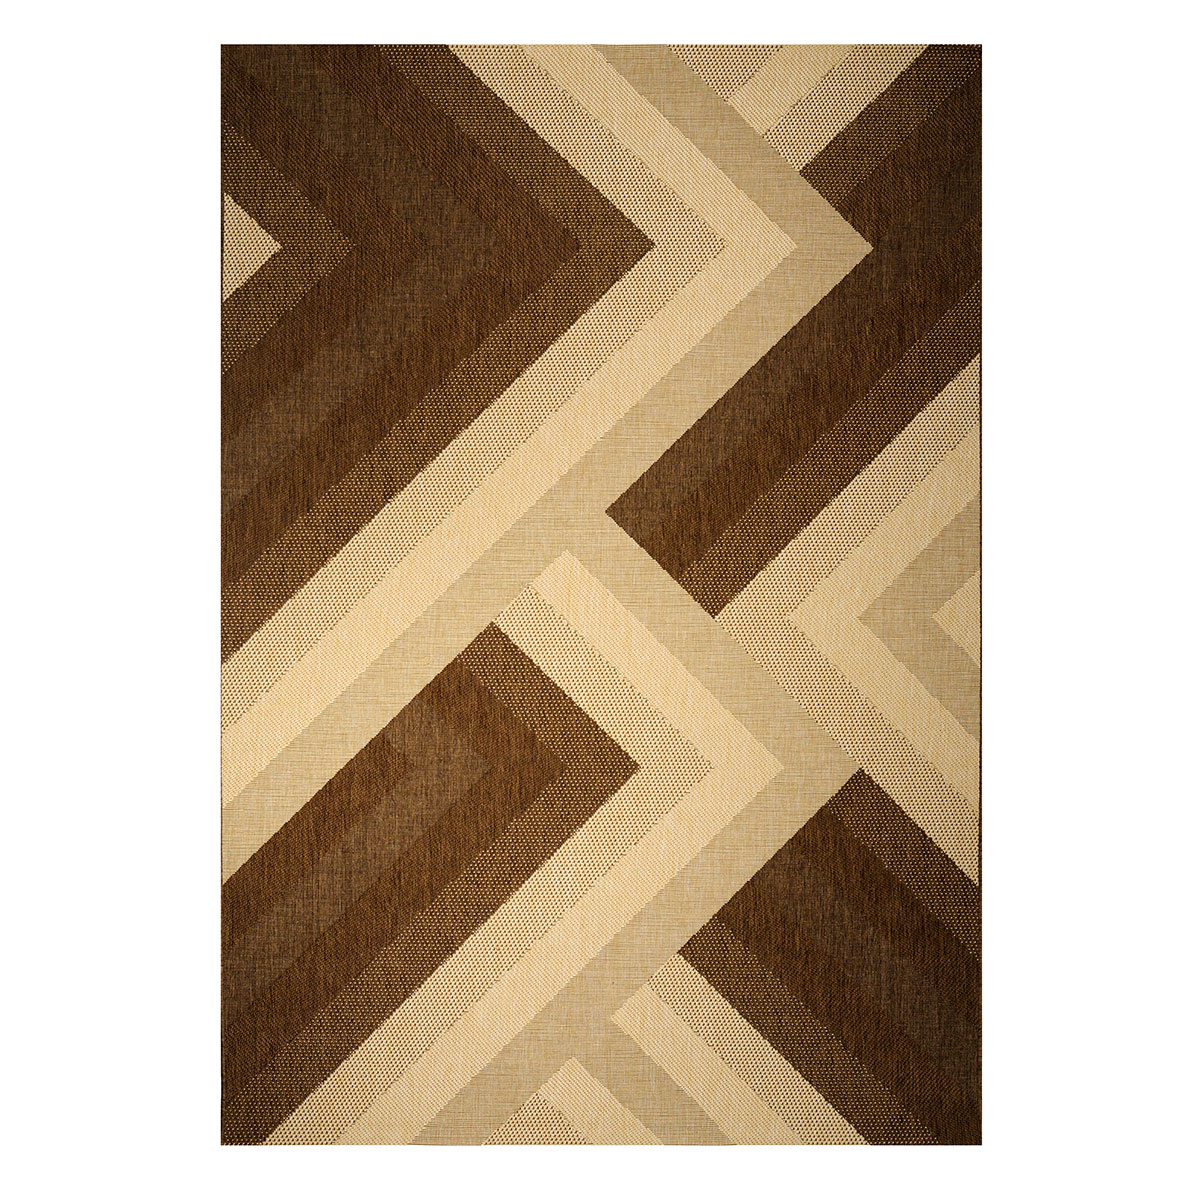 Χαλιά Κρεβατοκάμαρας (Σετ 3τμχ) Tzikas Carpets Maestro 32008-081 202917